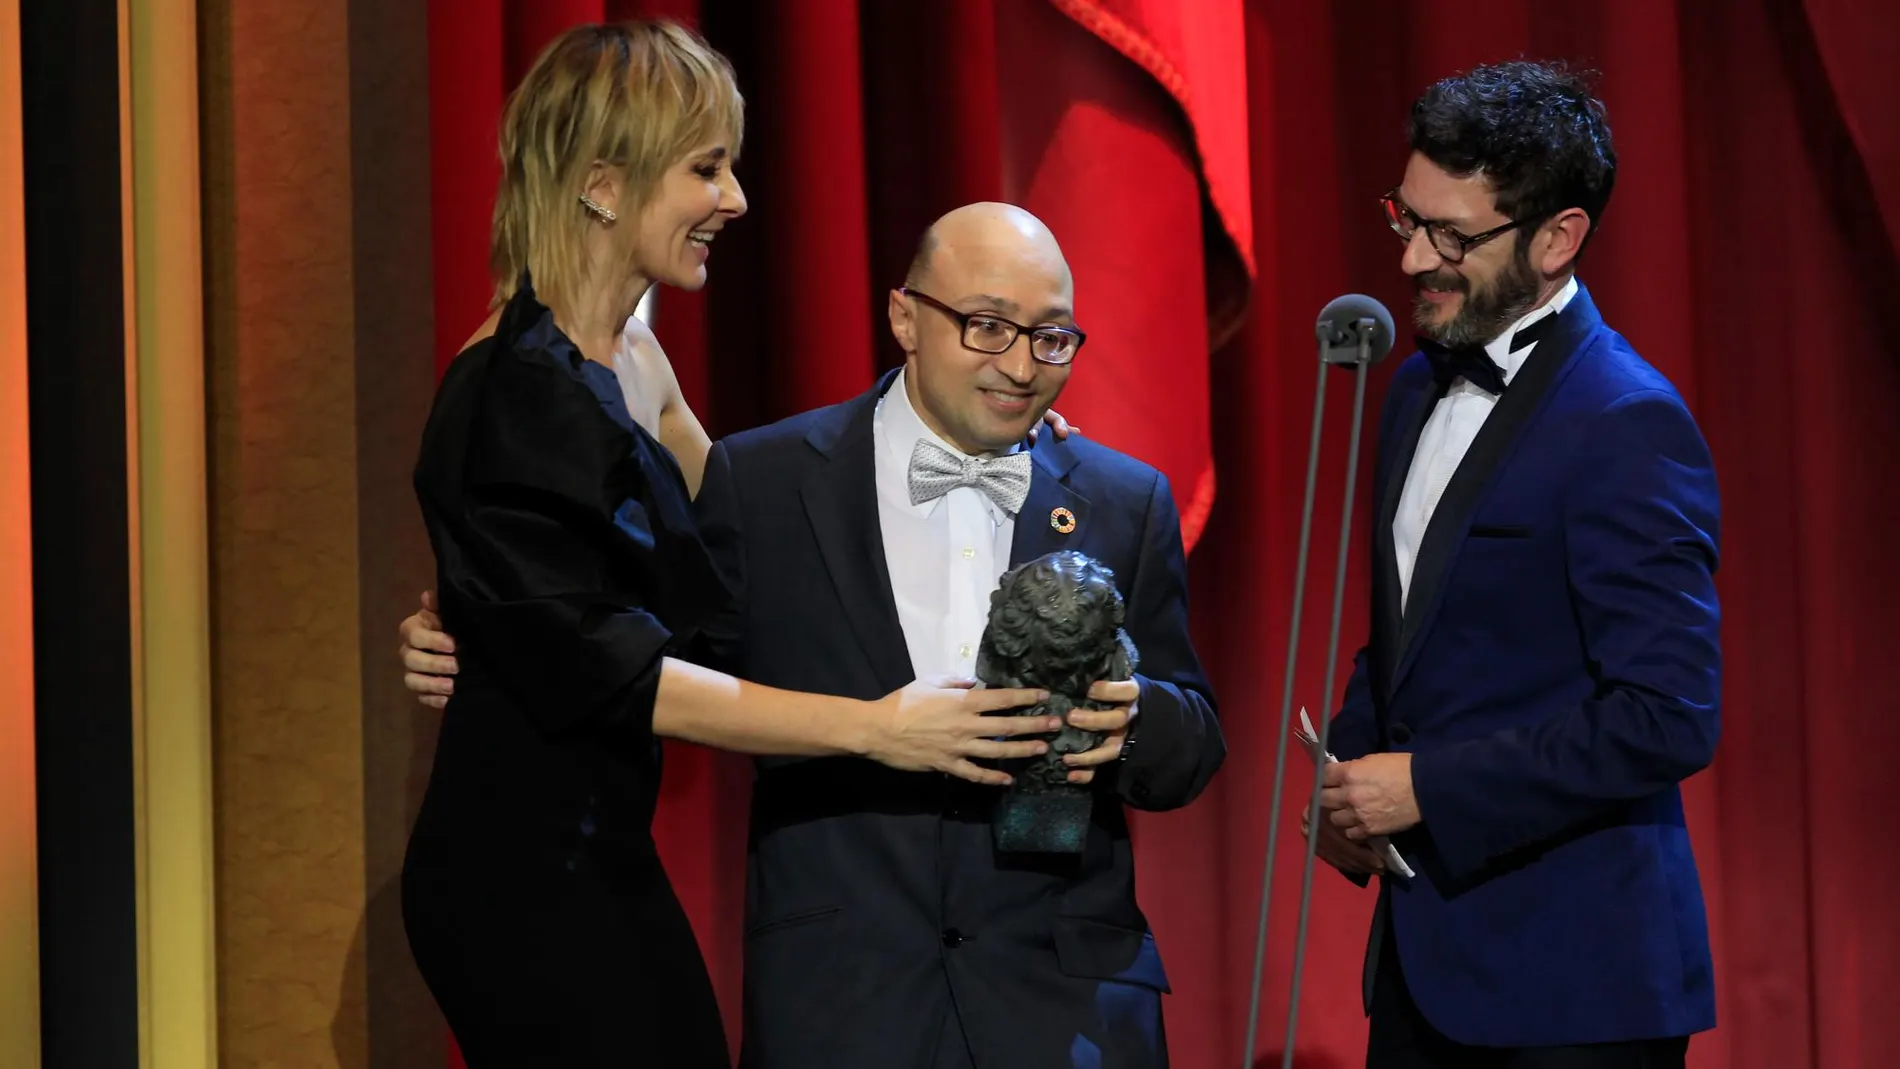 Jesus Vidal recibe el premio como mejor actor revelación en la gala de los Goya